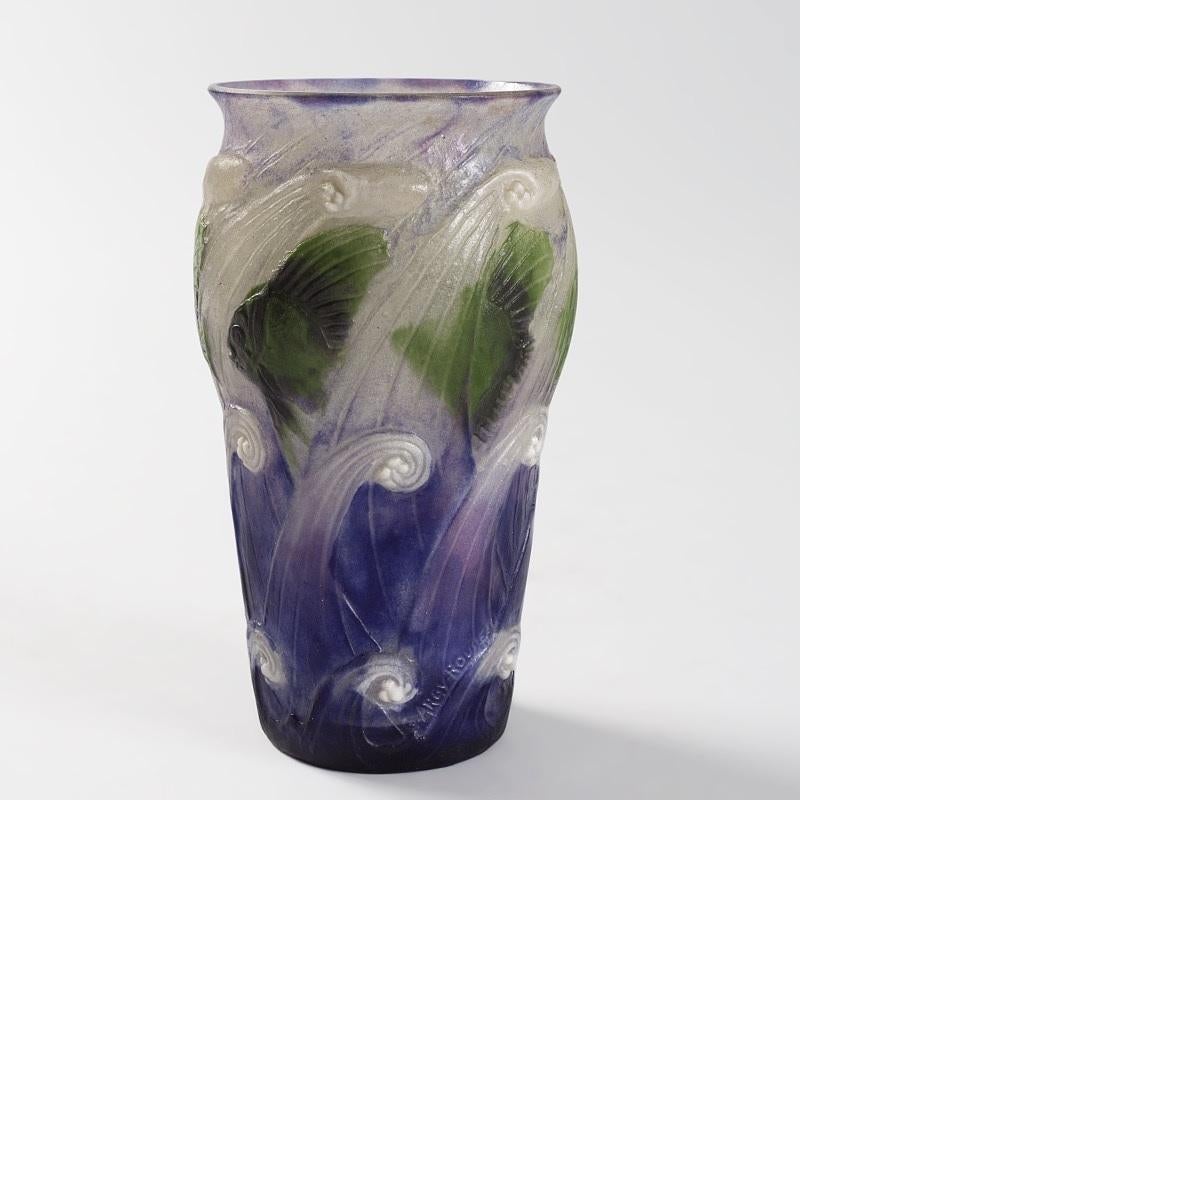 This pâte de verre glass vase, entitled 